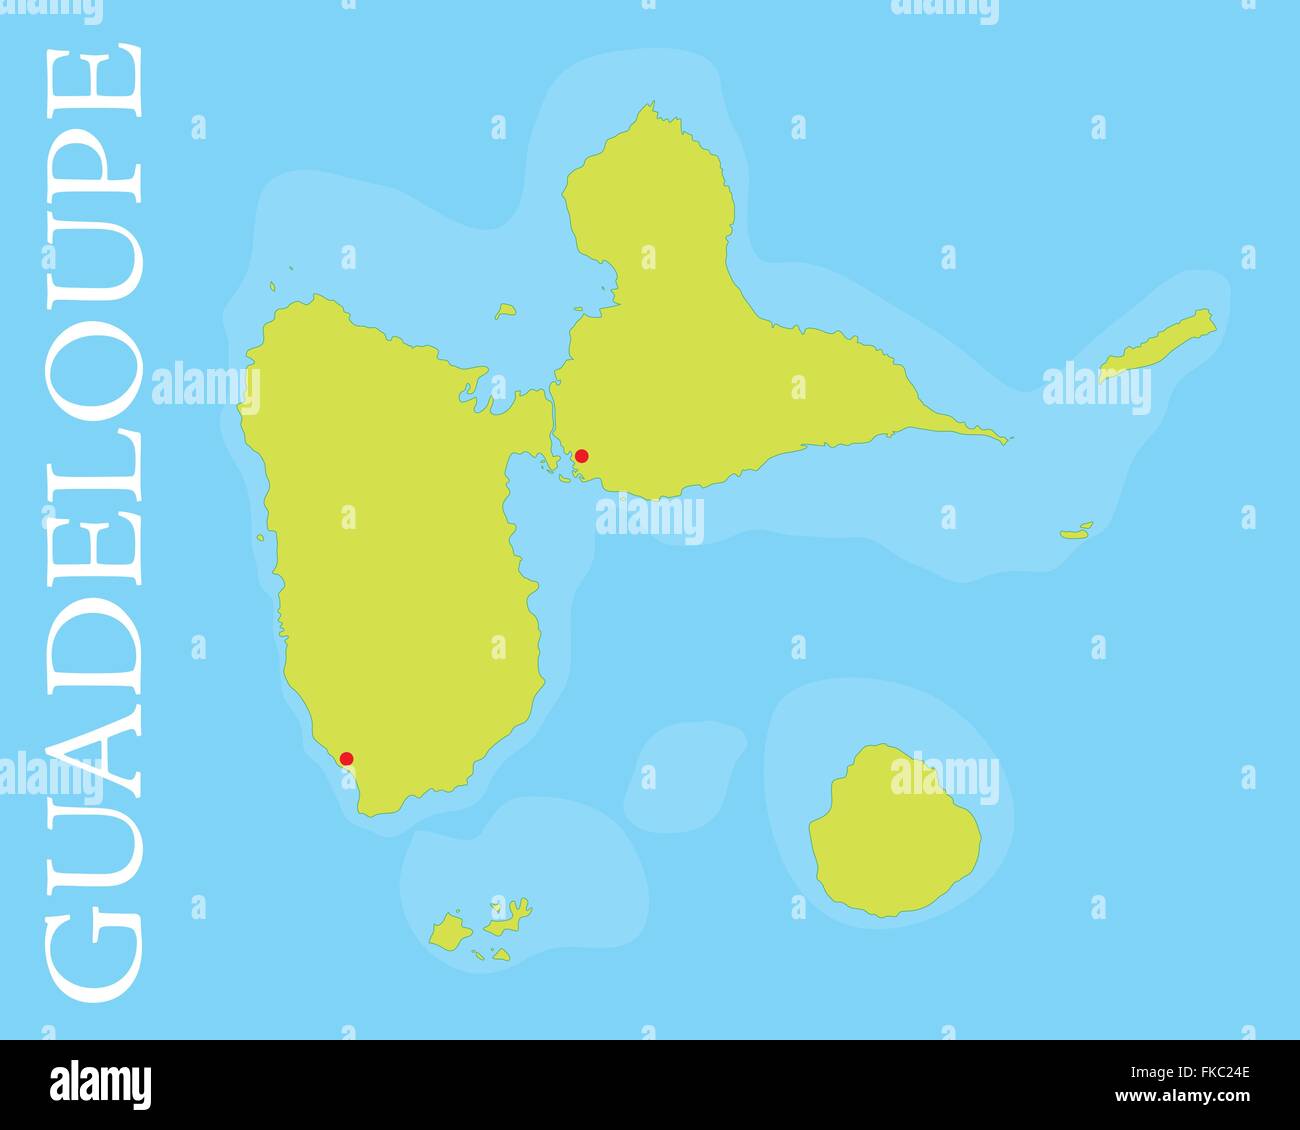 Site de l'archipel et département français de la Guadeloupe, la mer des Caraïbes. Illustration de Vecteur